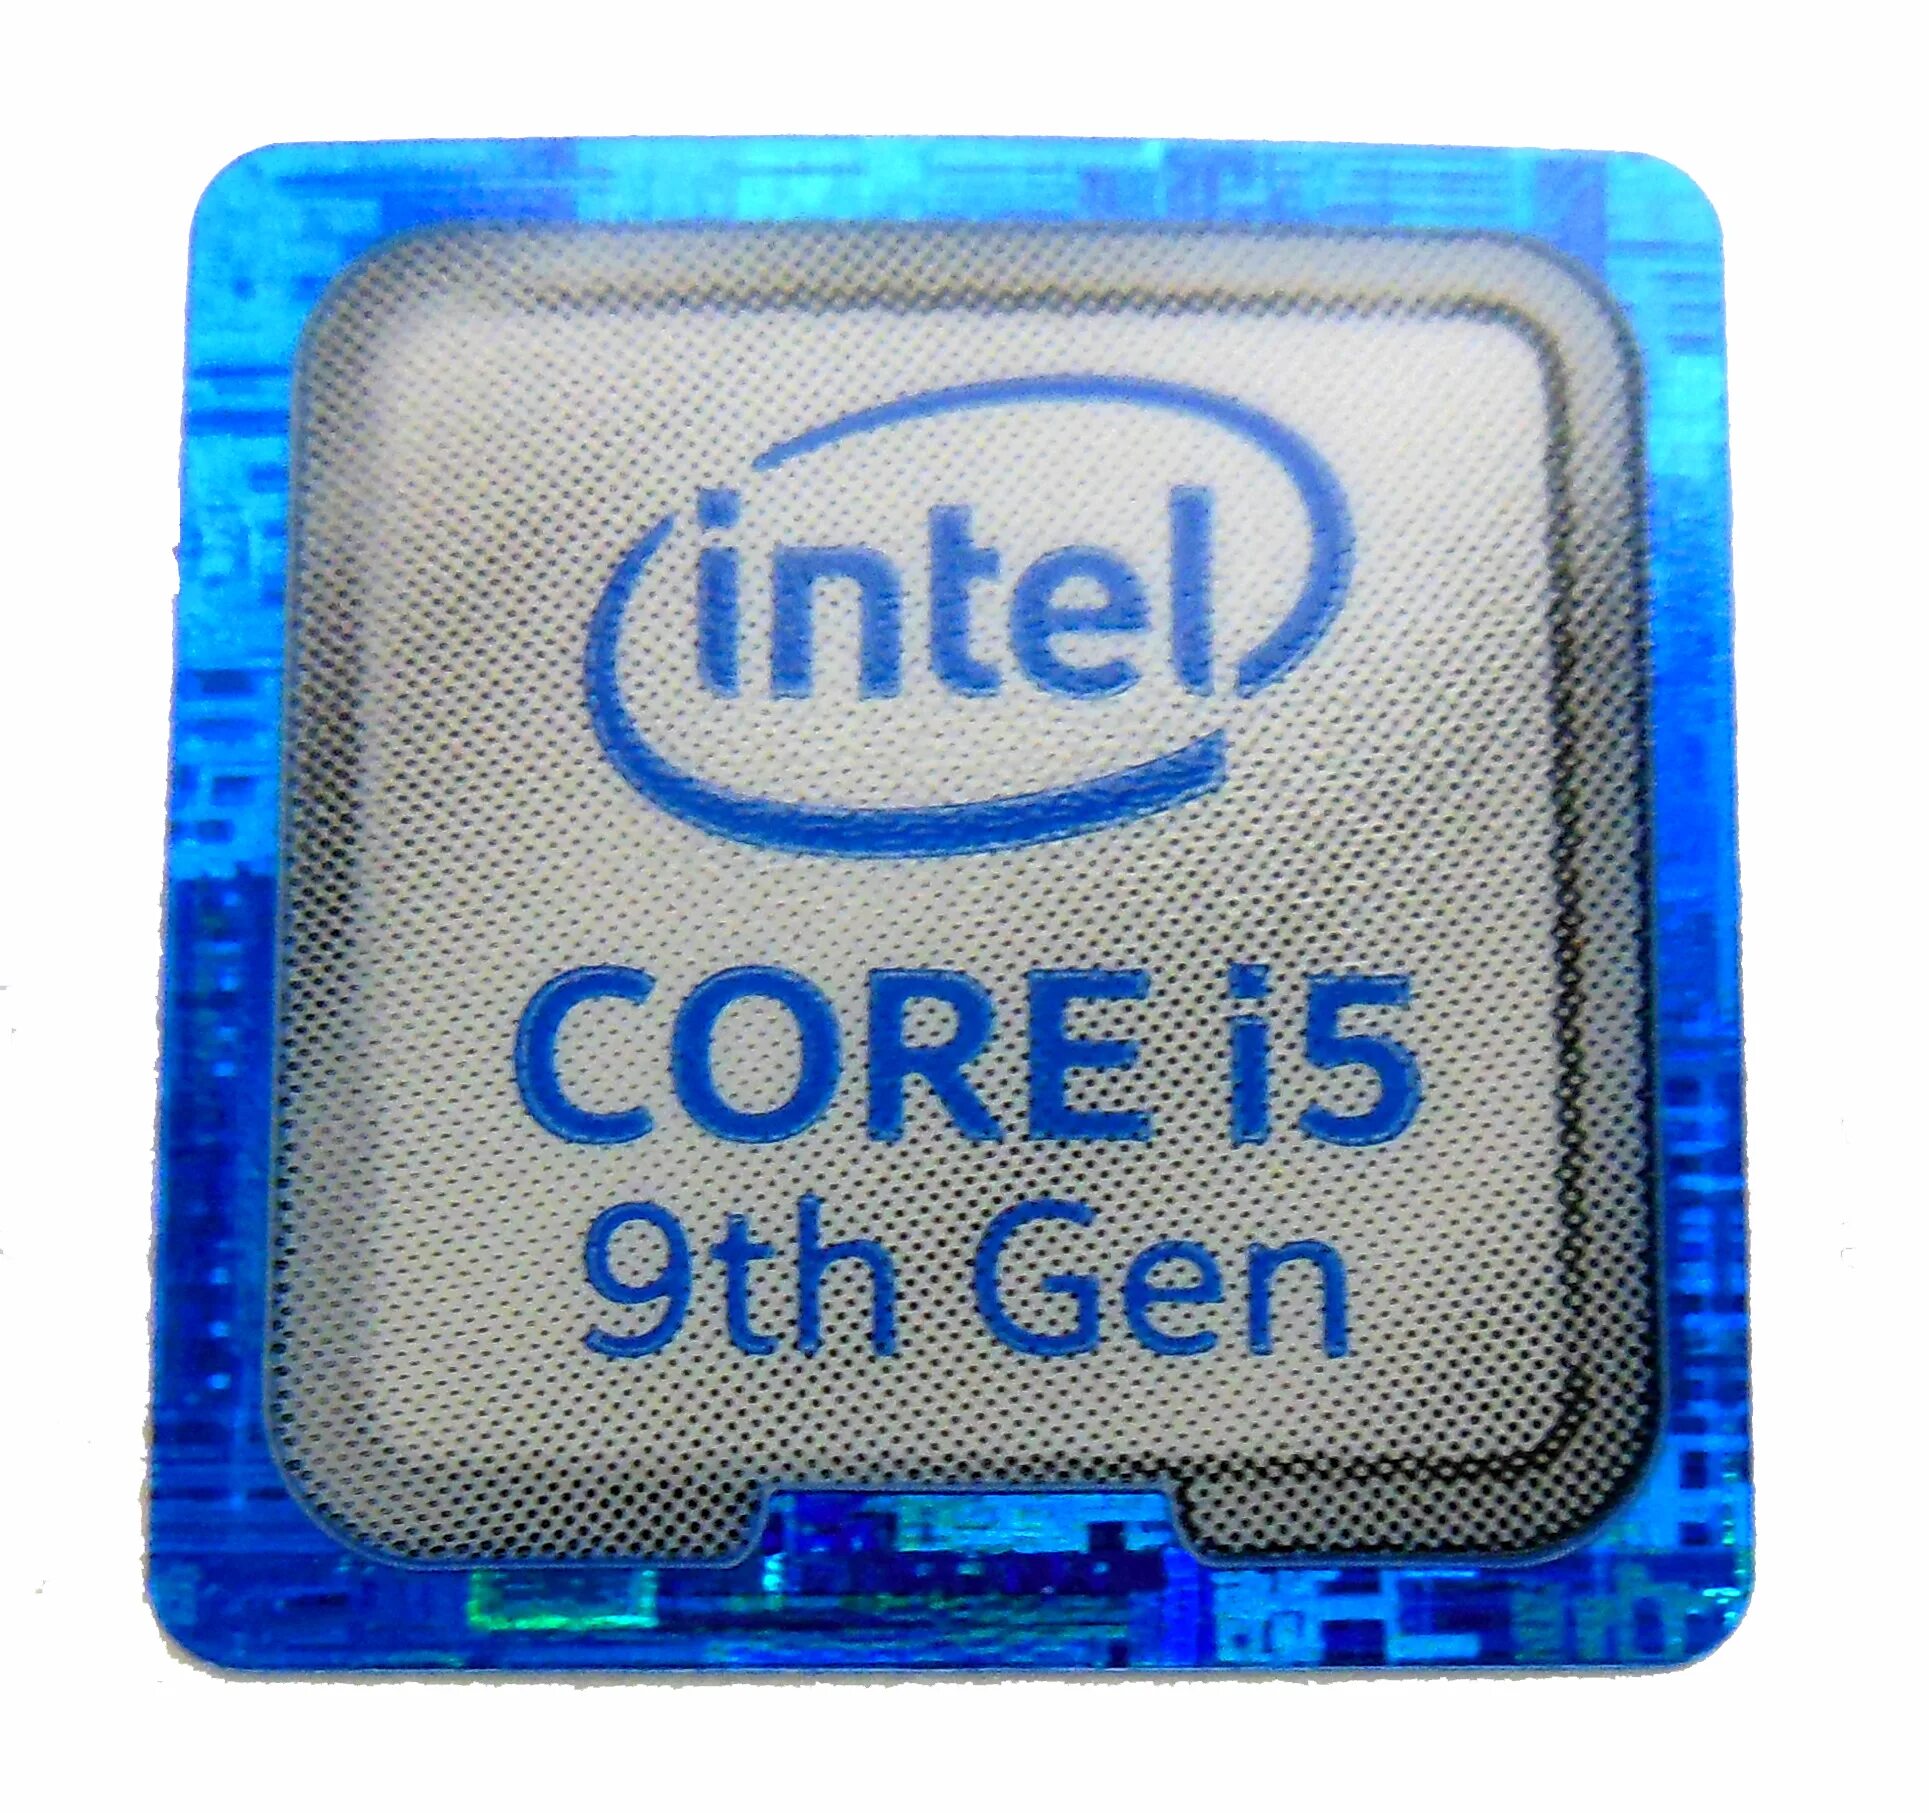 Intel Core i5. Intel-Core i713700. Intel Core i5 10th Gen. Иконки Intel Core i5.